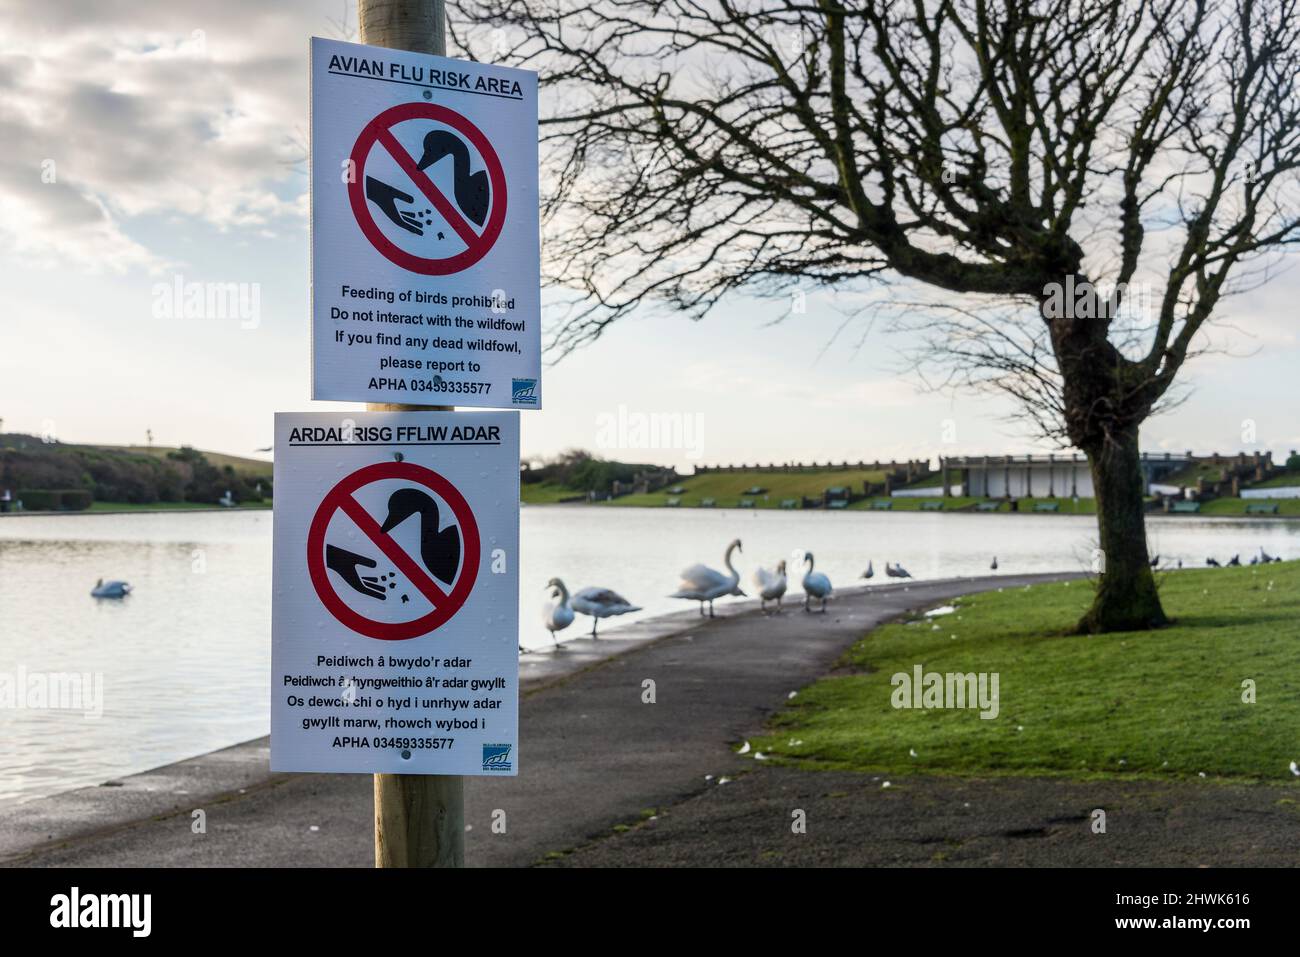 Signos temporales en galés e inglés en un parque público advirtiendo que la gripe aviar, la gripe aviar, está presente entre los cisnes vistos en el fondo. Foto de stock